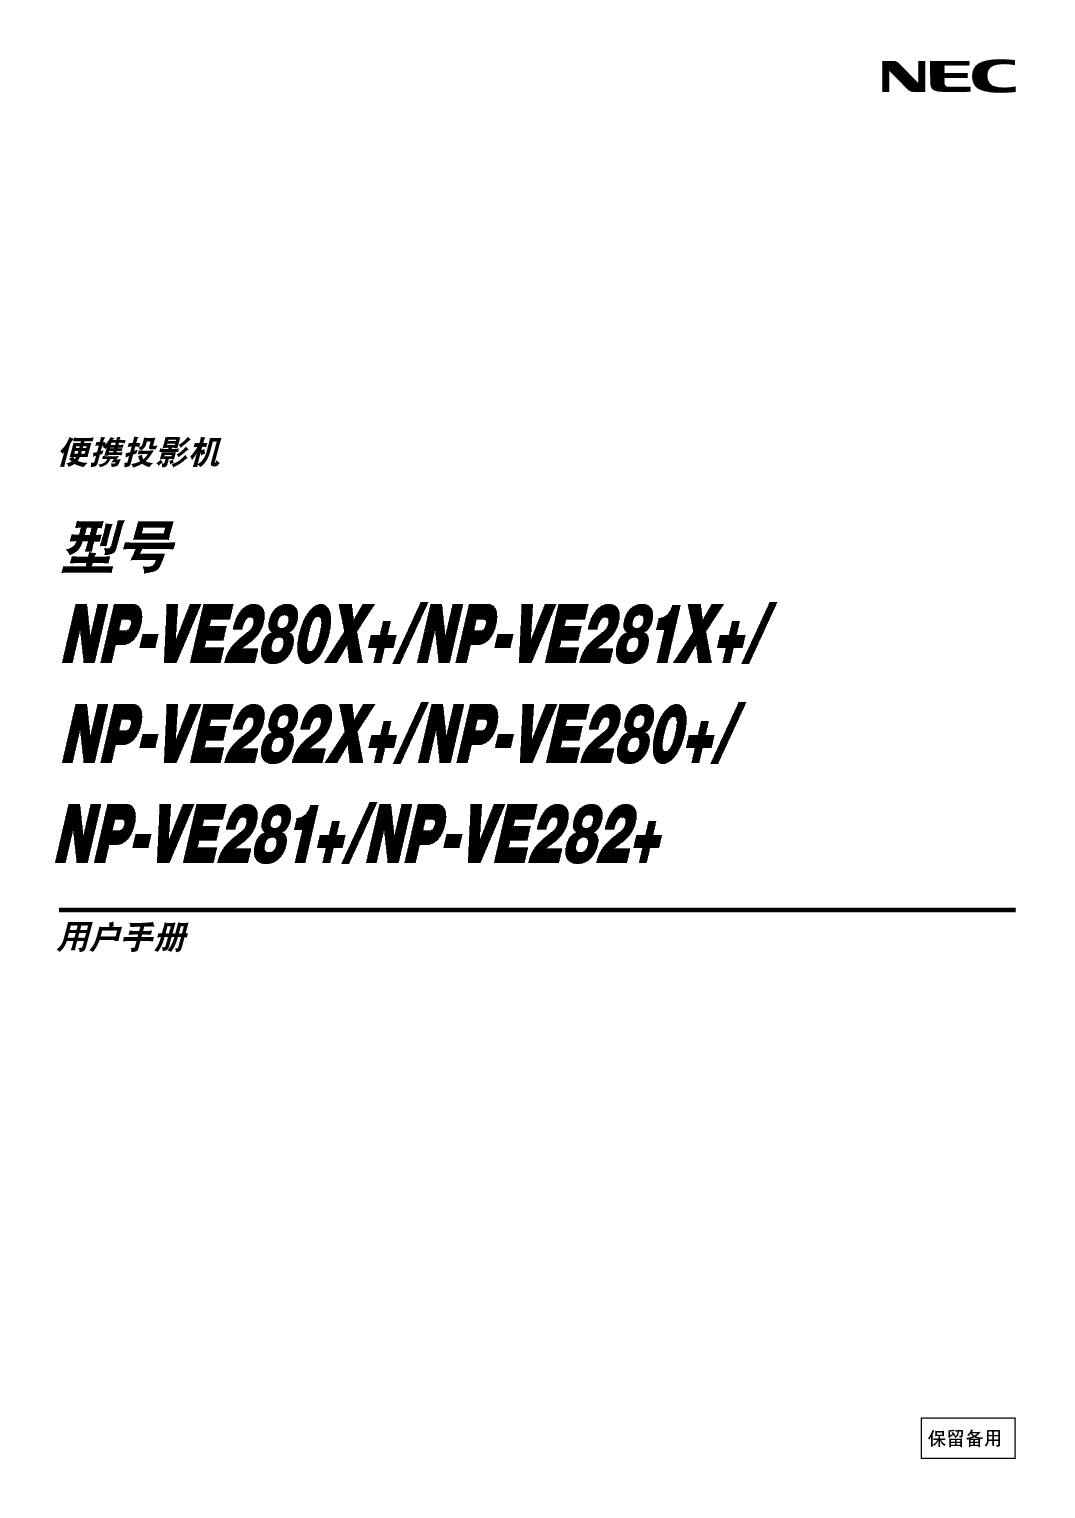 NEC NP-VE280+ 用户手册 封面